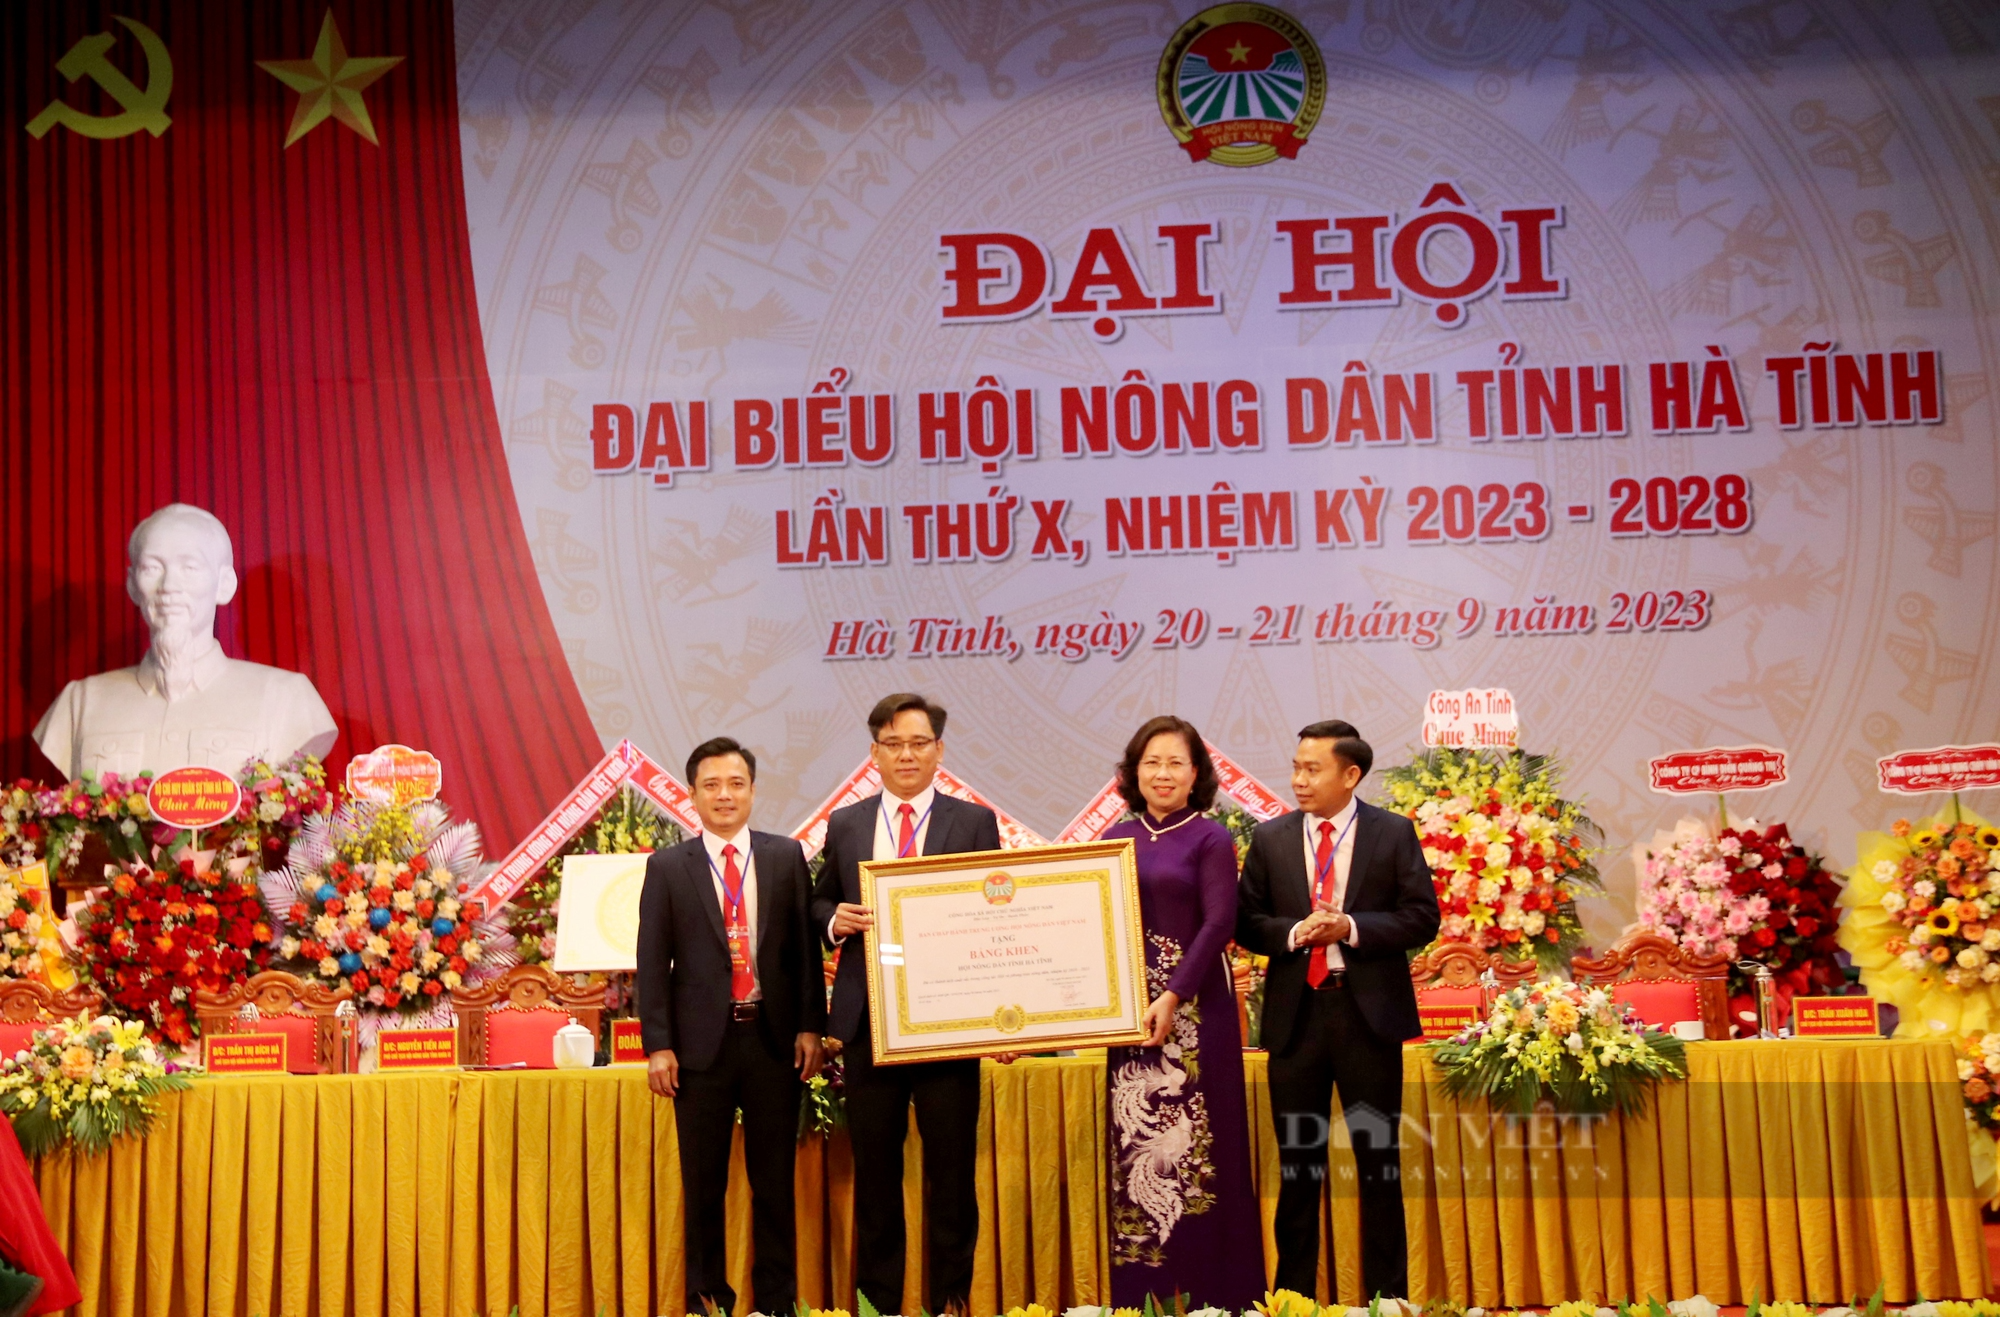 Phó Chủ tịch Hội NDVN Bùi Thị Thơm: Hà Tĩnh có nhiều cách làm hay, mô hình tốt về xây dựng nông thôn mới- Ảnh 7.